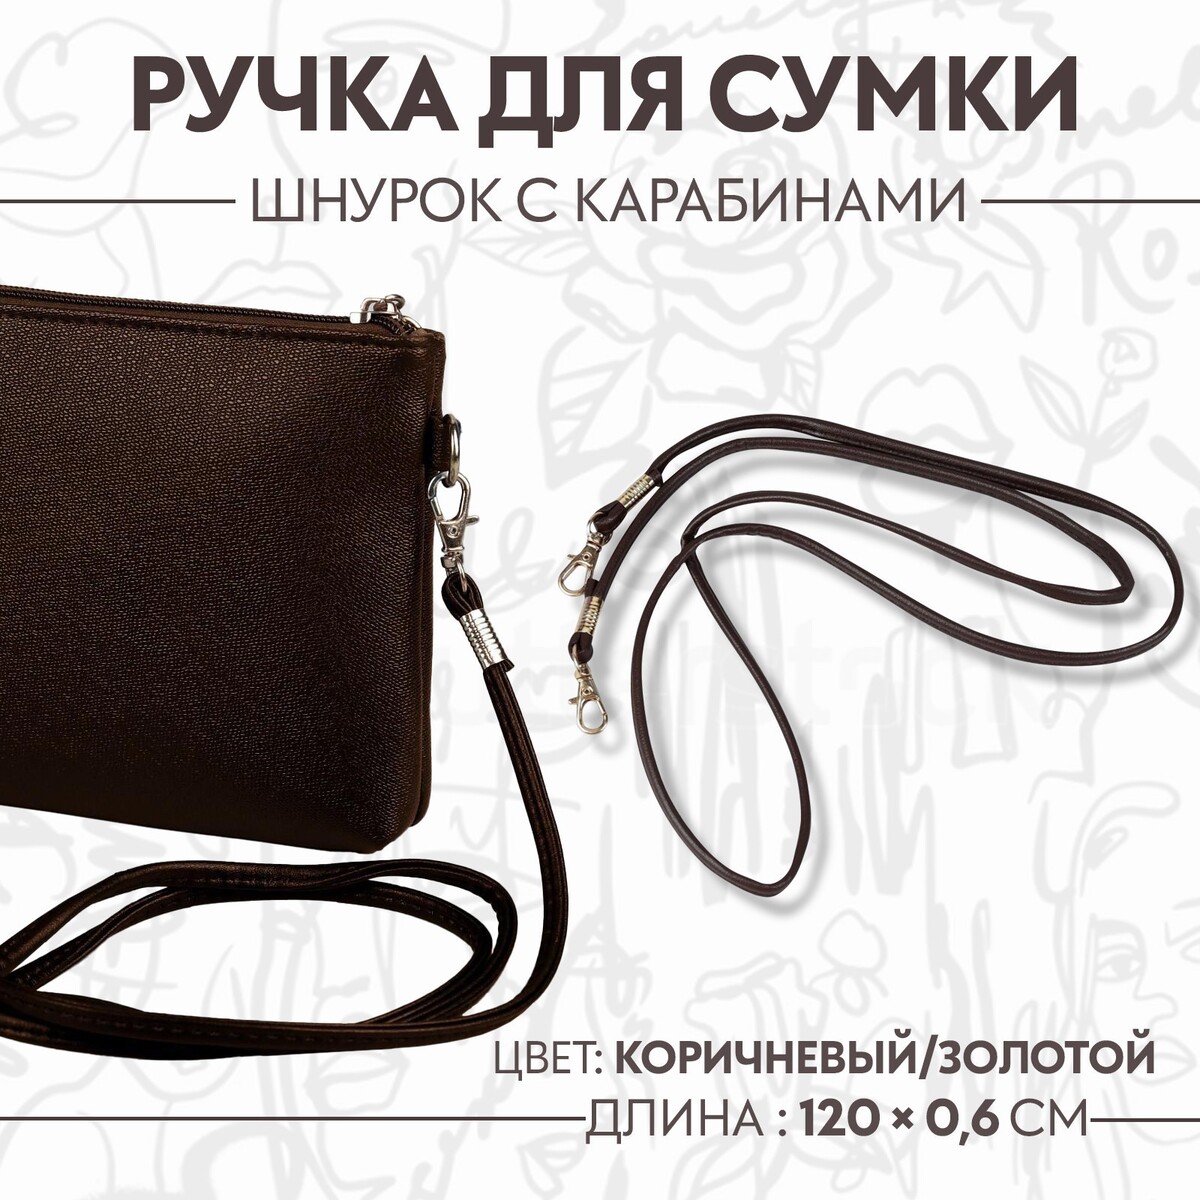 Ручка-шнурок для сумки, с карабинами, 120 × 0,6 см, цвет коричневый ручка рейлинг cappio м о 96 мм коричневый